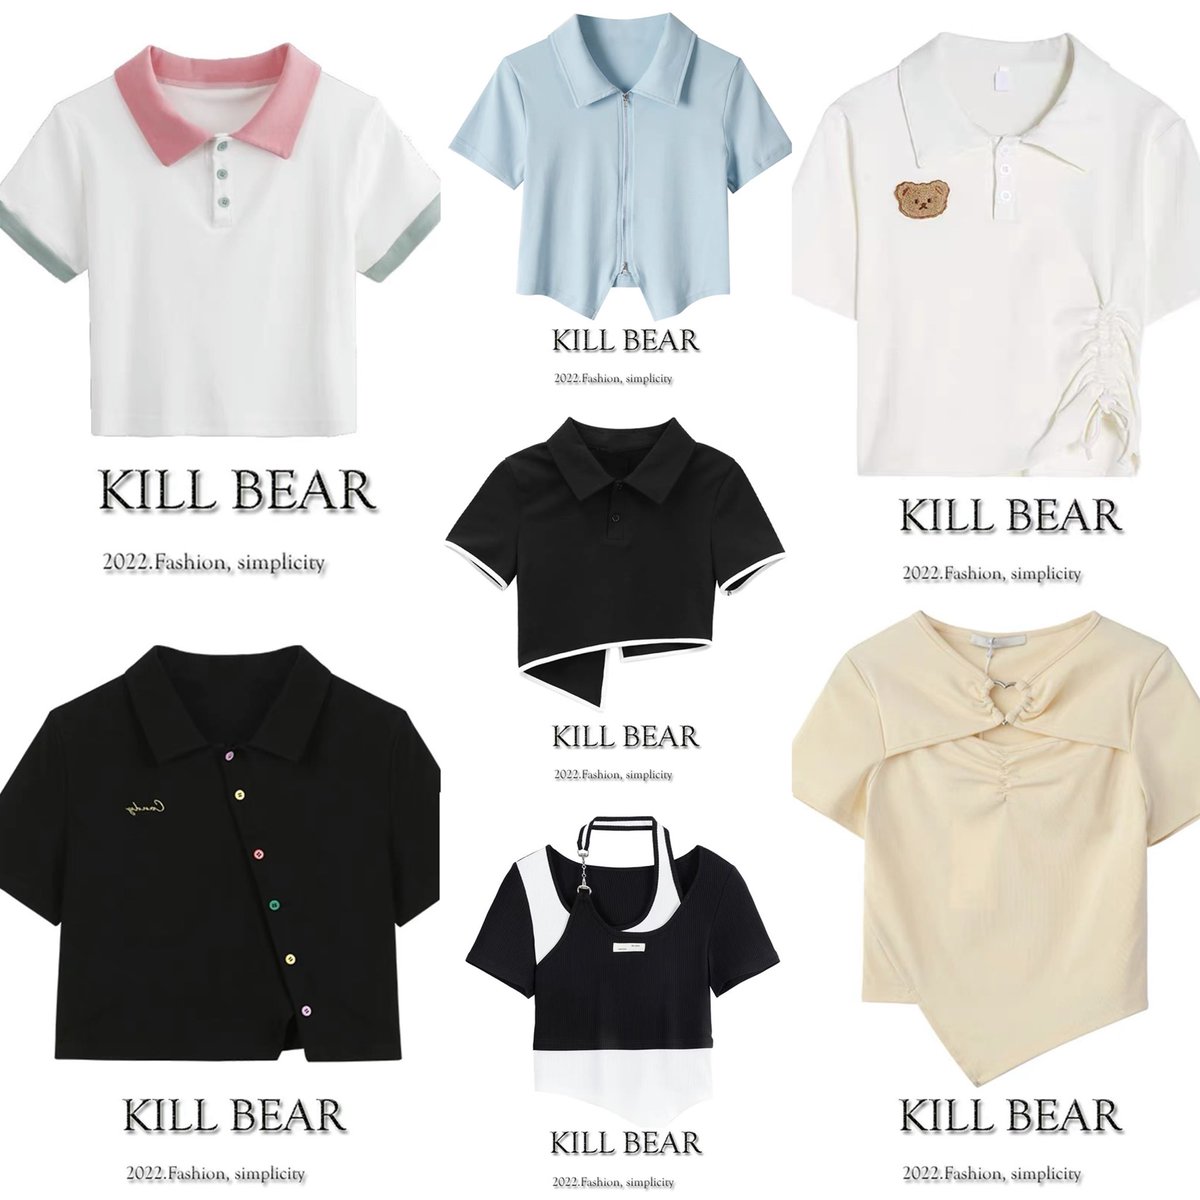 เสื้อของ kill bear มีแต่สวยๆน่ารักทั้งนั้นตอนนี้จัดโปรเหลือตัวละ 249-299฿ เท่านั้นจากปกติสี่ห้าร้อยเลย